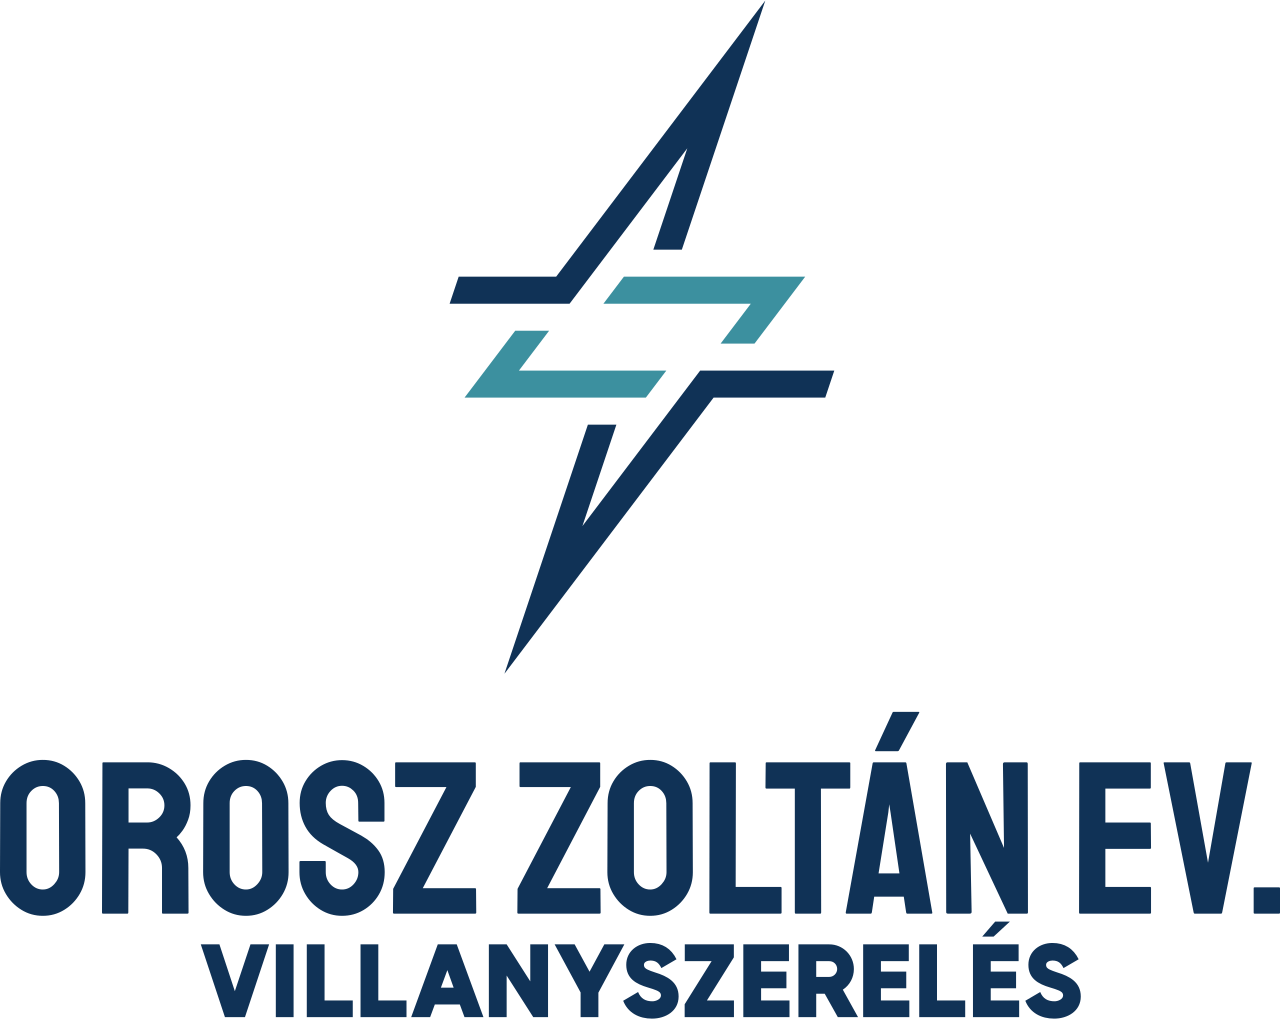 Orosz Zoltán e.v. - Villanyszerelés's web page